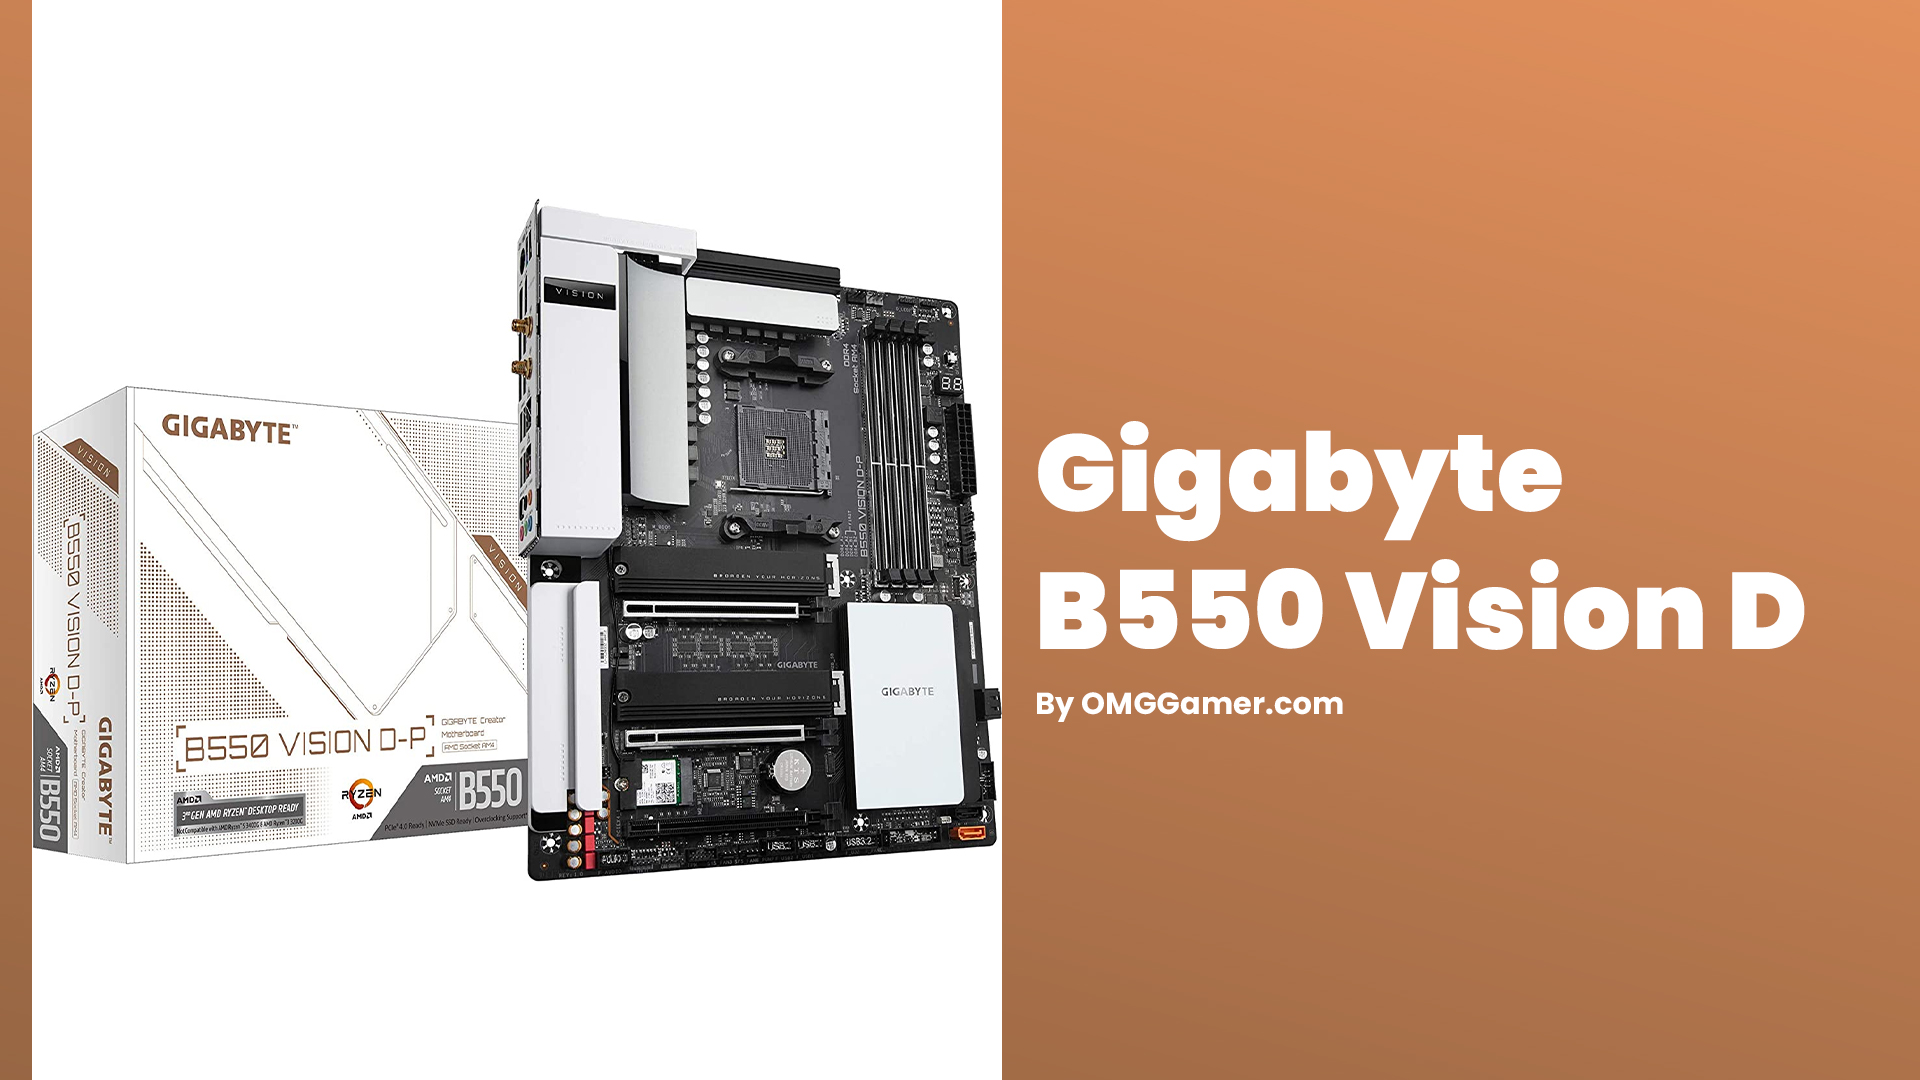 Gigabyte B550 Vision D: Best Motherboard for Ryzen 9 5900x